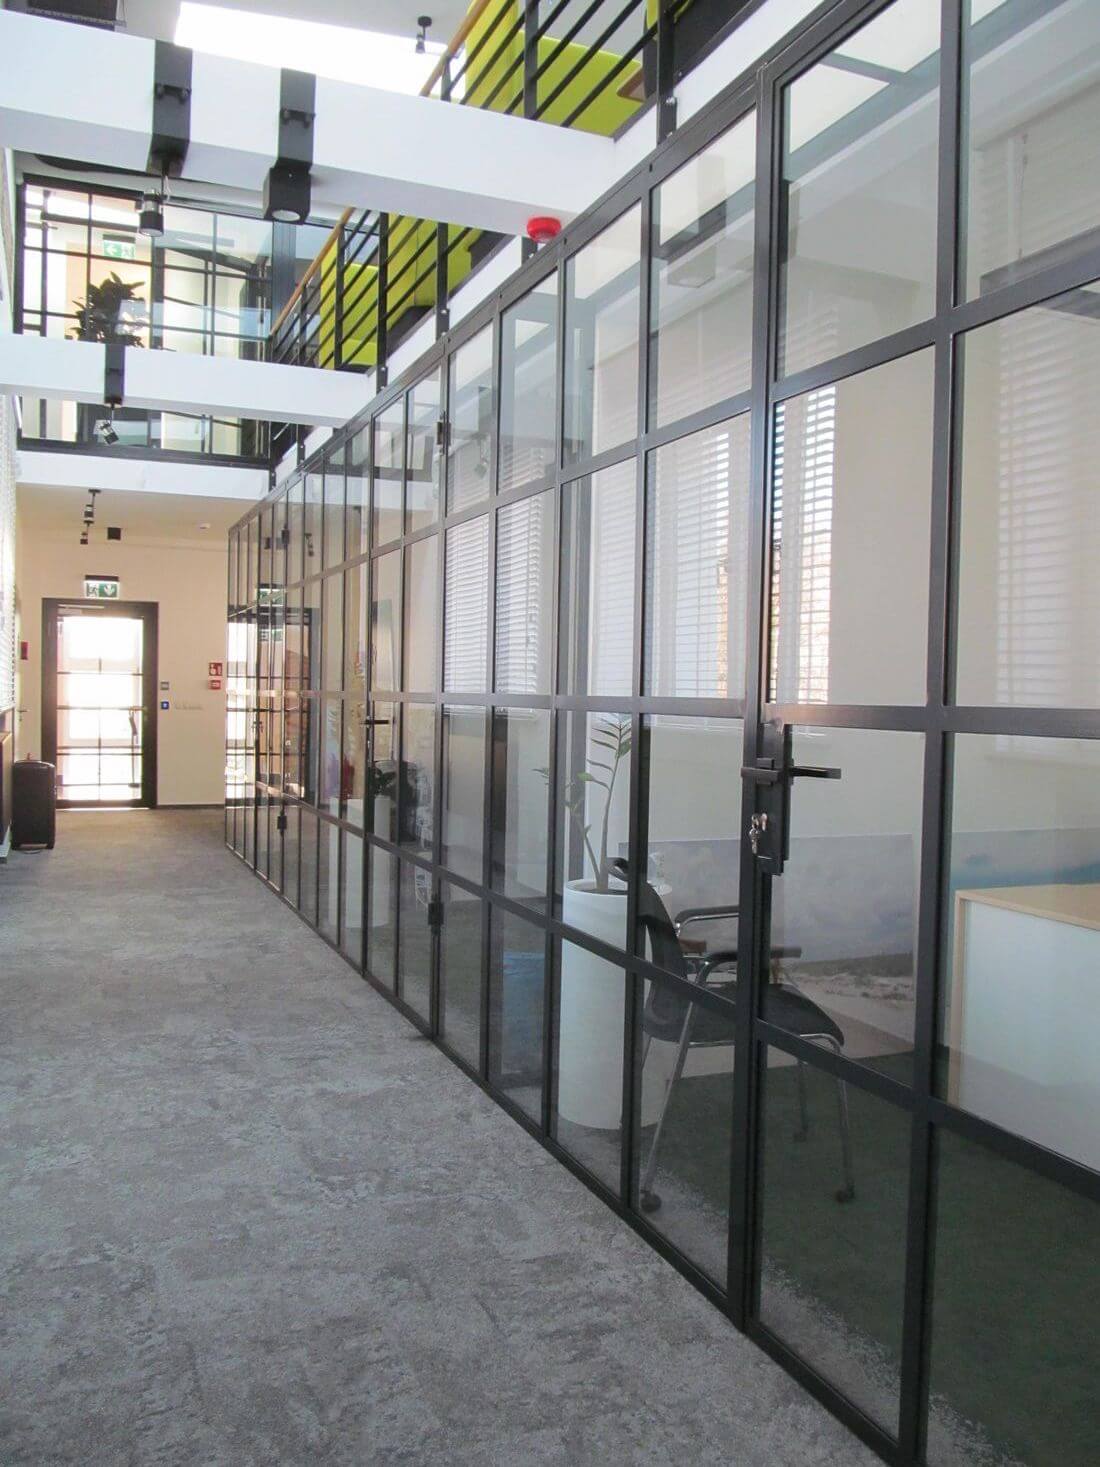 Loft System Drzwi Loftowych i Ścianek Loftowych w industrialnym stylu ze wzmacnianego szkła i stali konstrukcyjnej